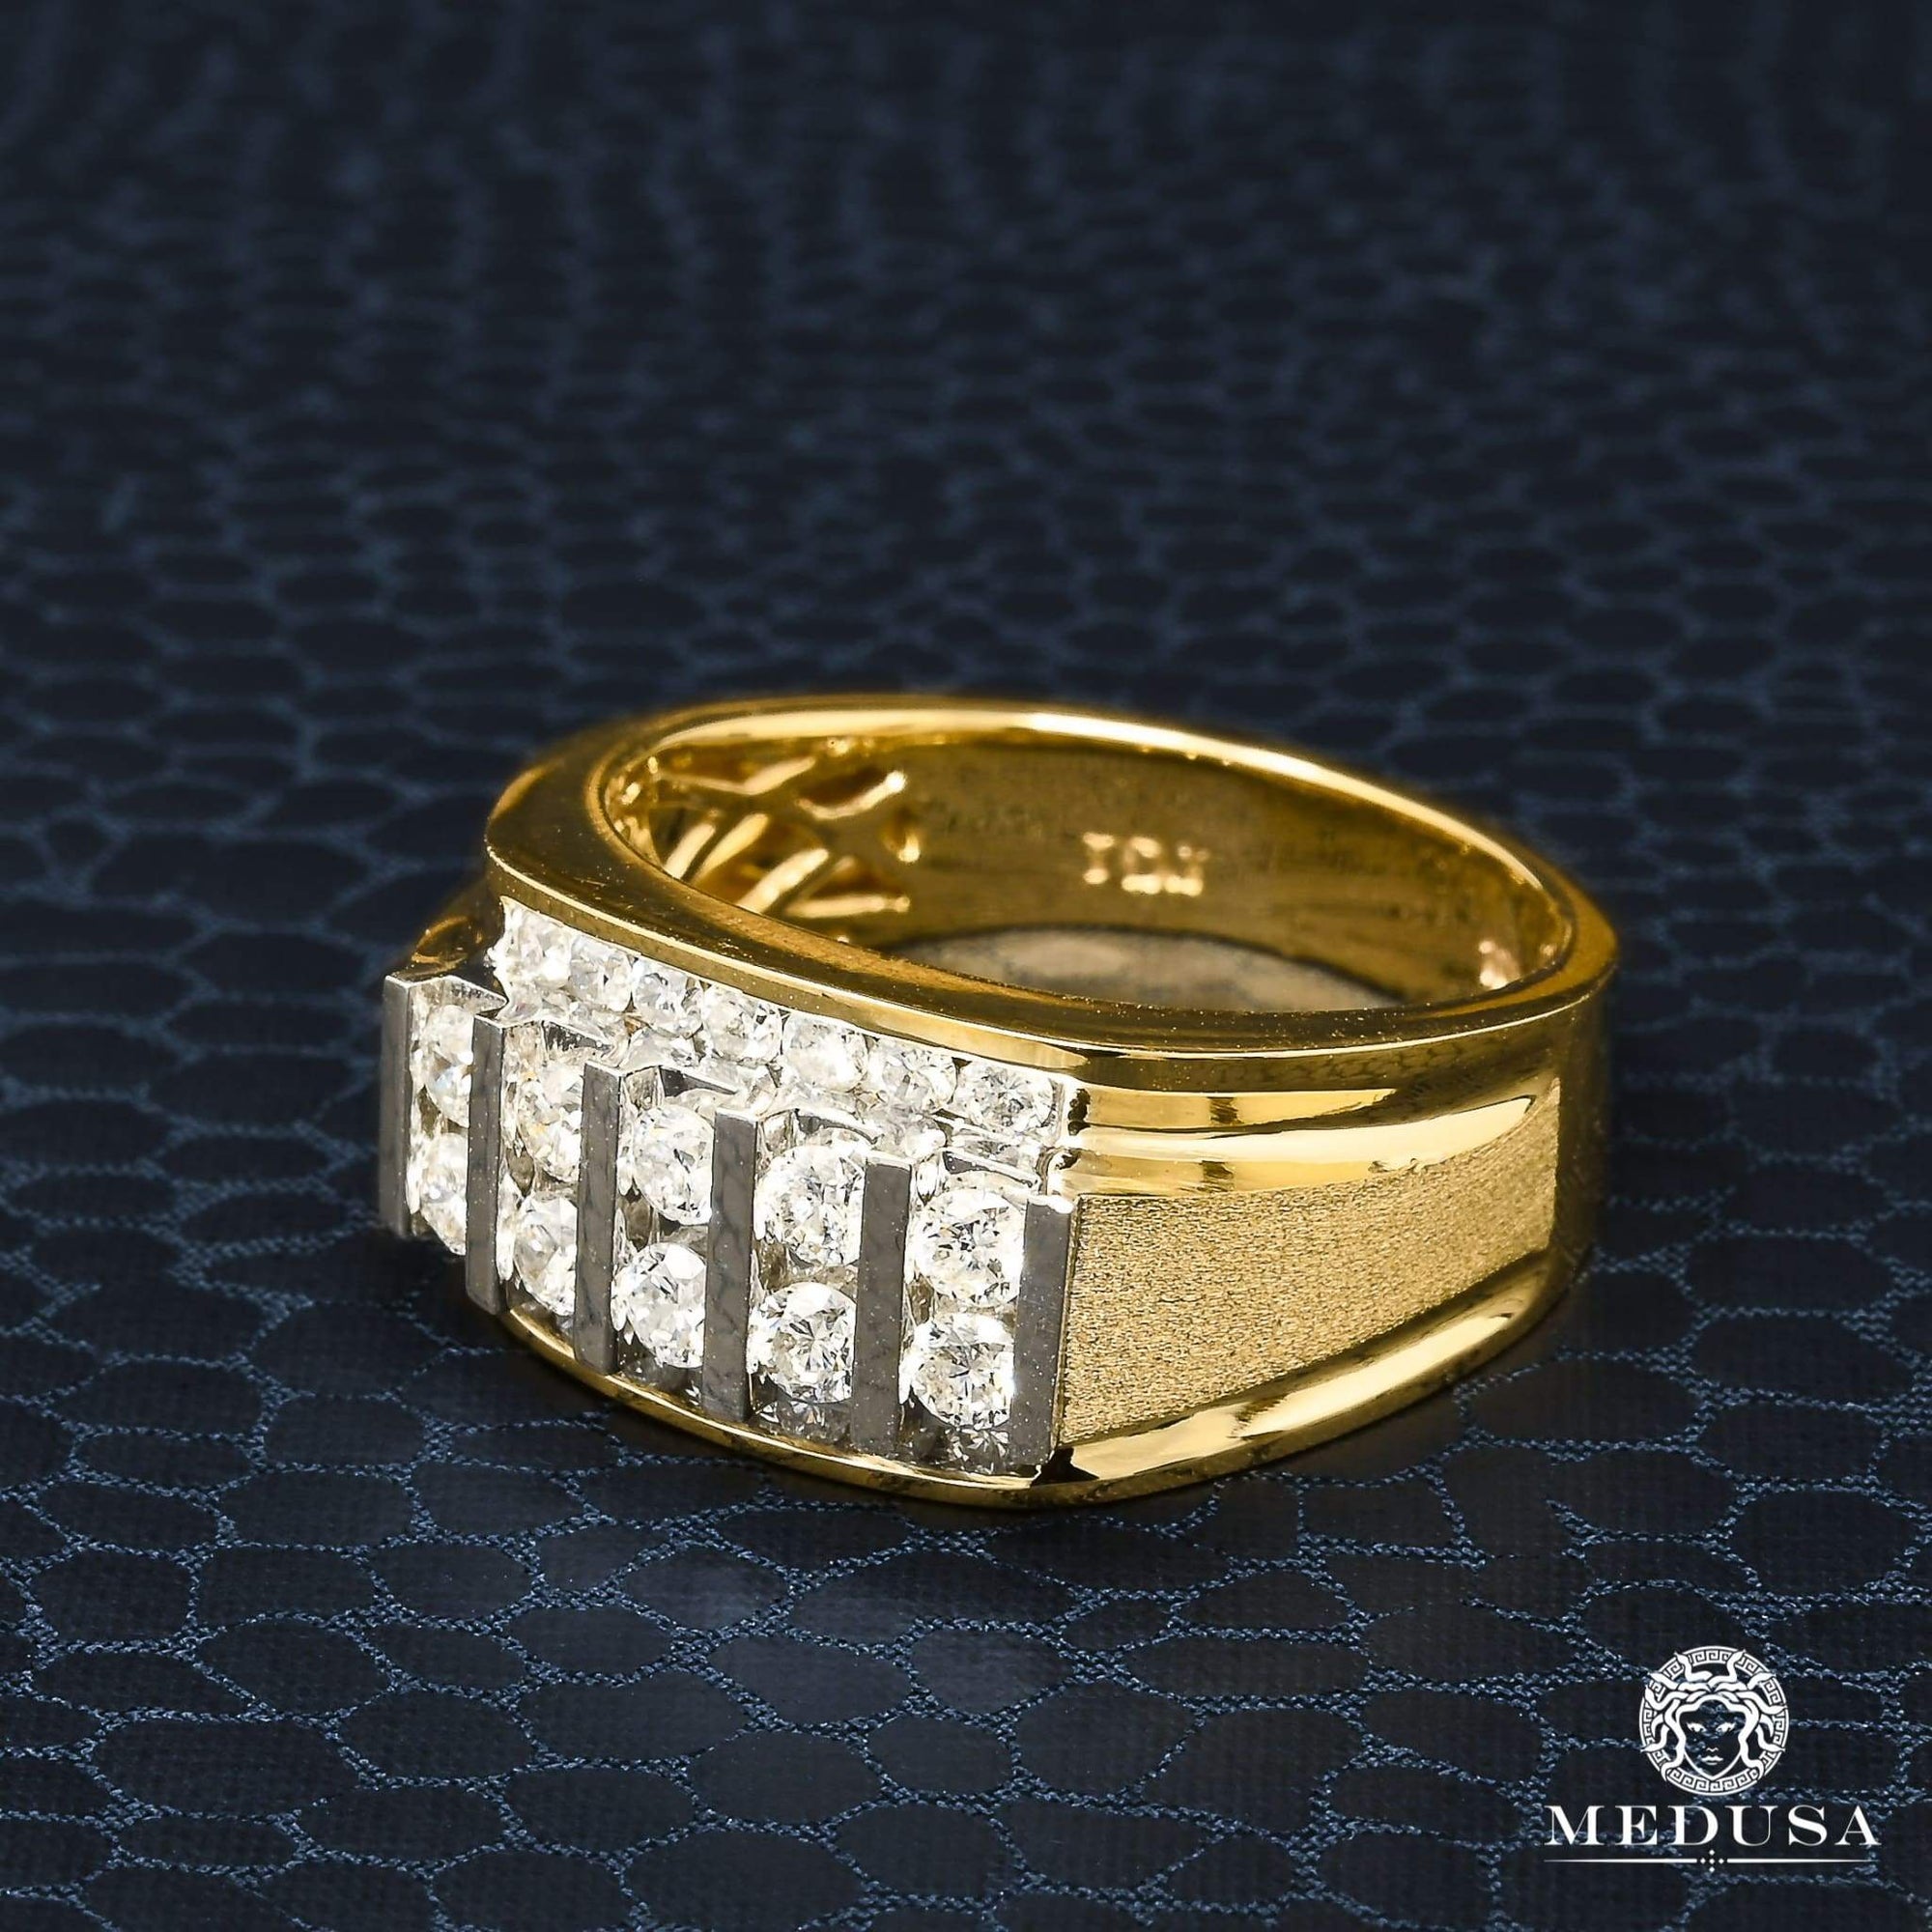 10K Gold Diamond Ring | Square D6 Men's Ring - 1.00CT Diamond / 2 Tone Gold